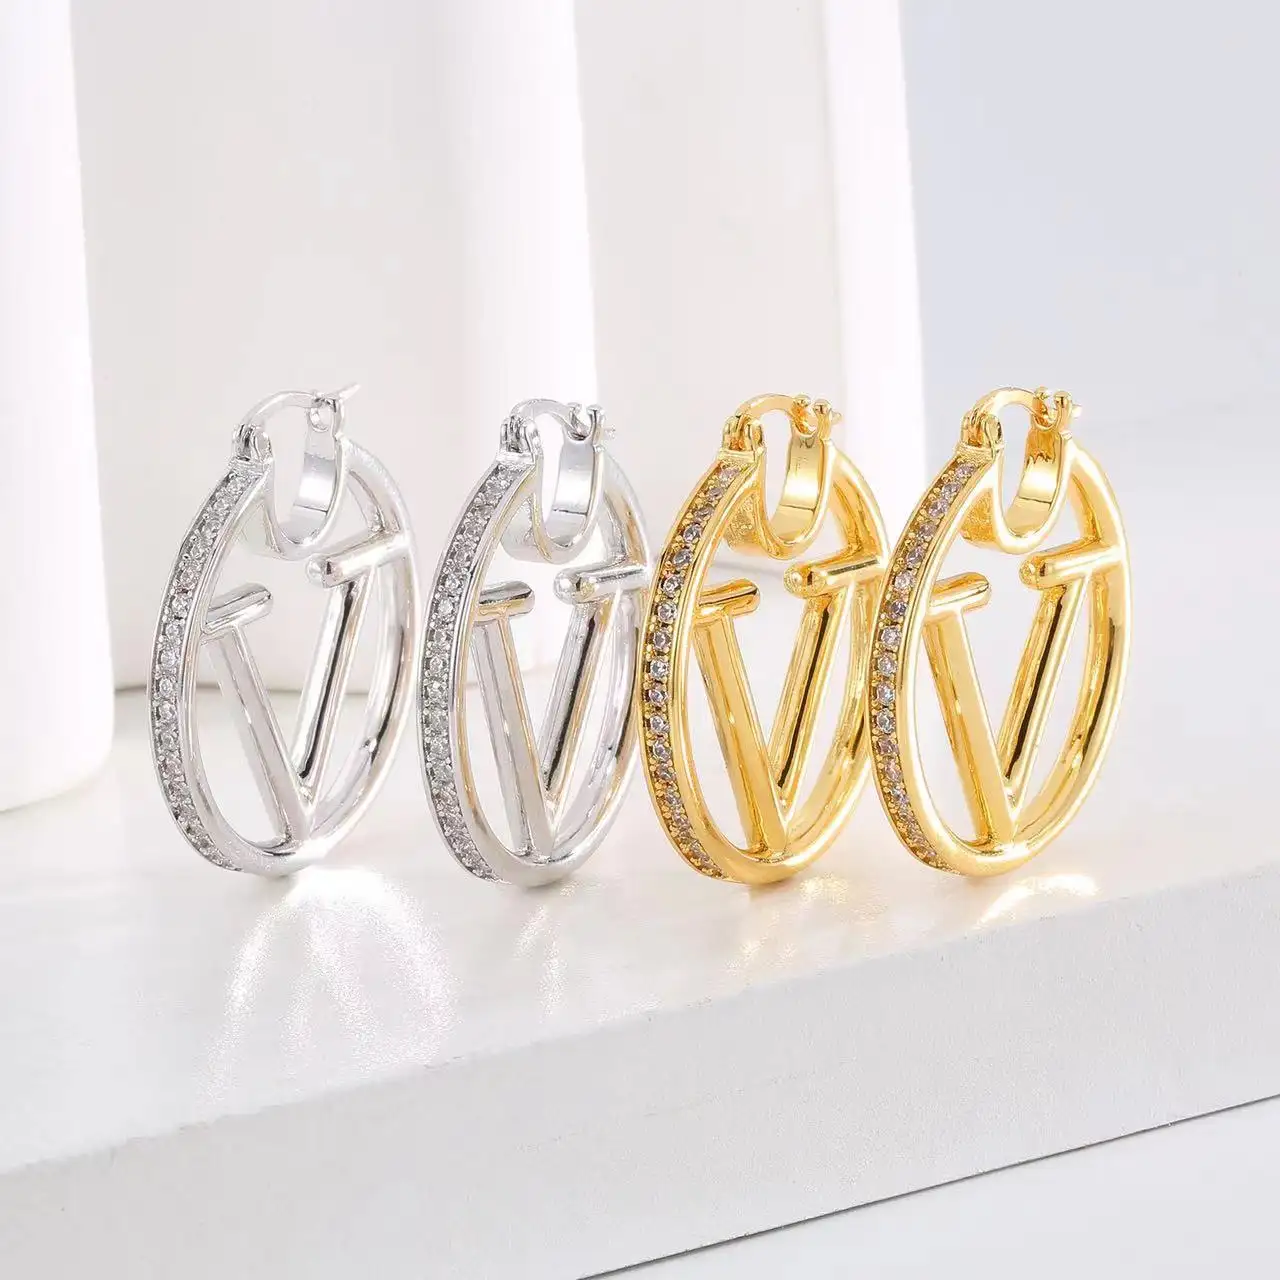 Anting-anting kristal model Premium, perhiasan anting-anting kristal lingkaran huruf V emas 18k gaya Premium, desainer mode mewah baru untuk wanita